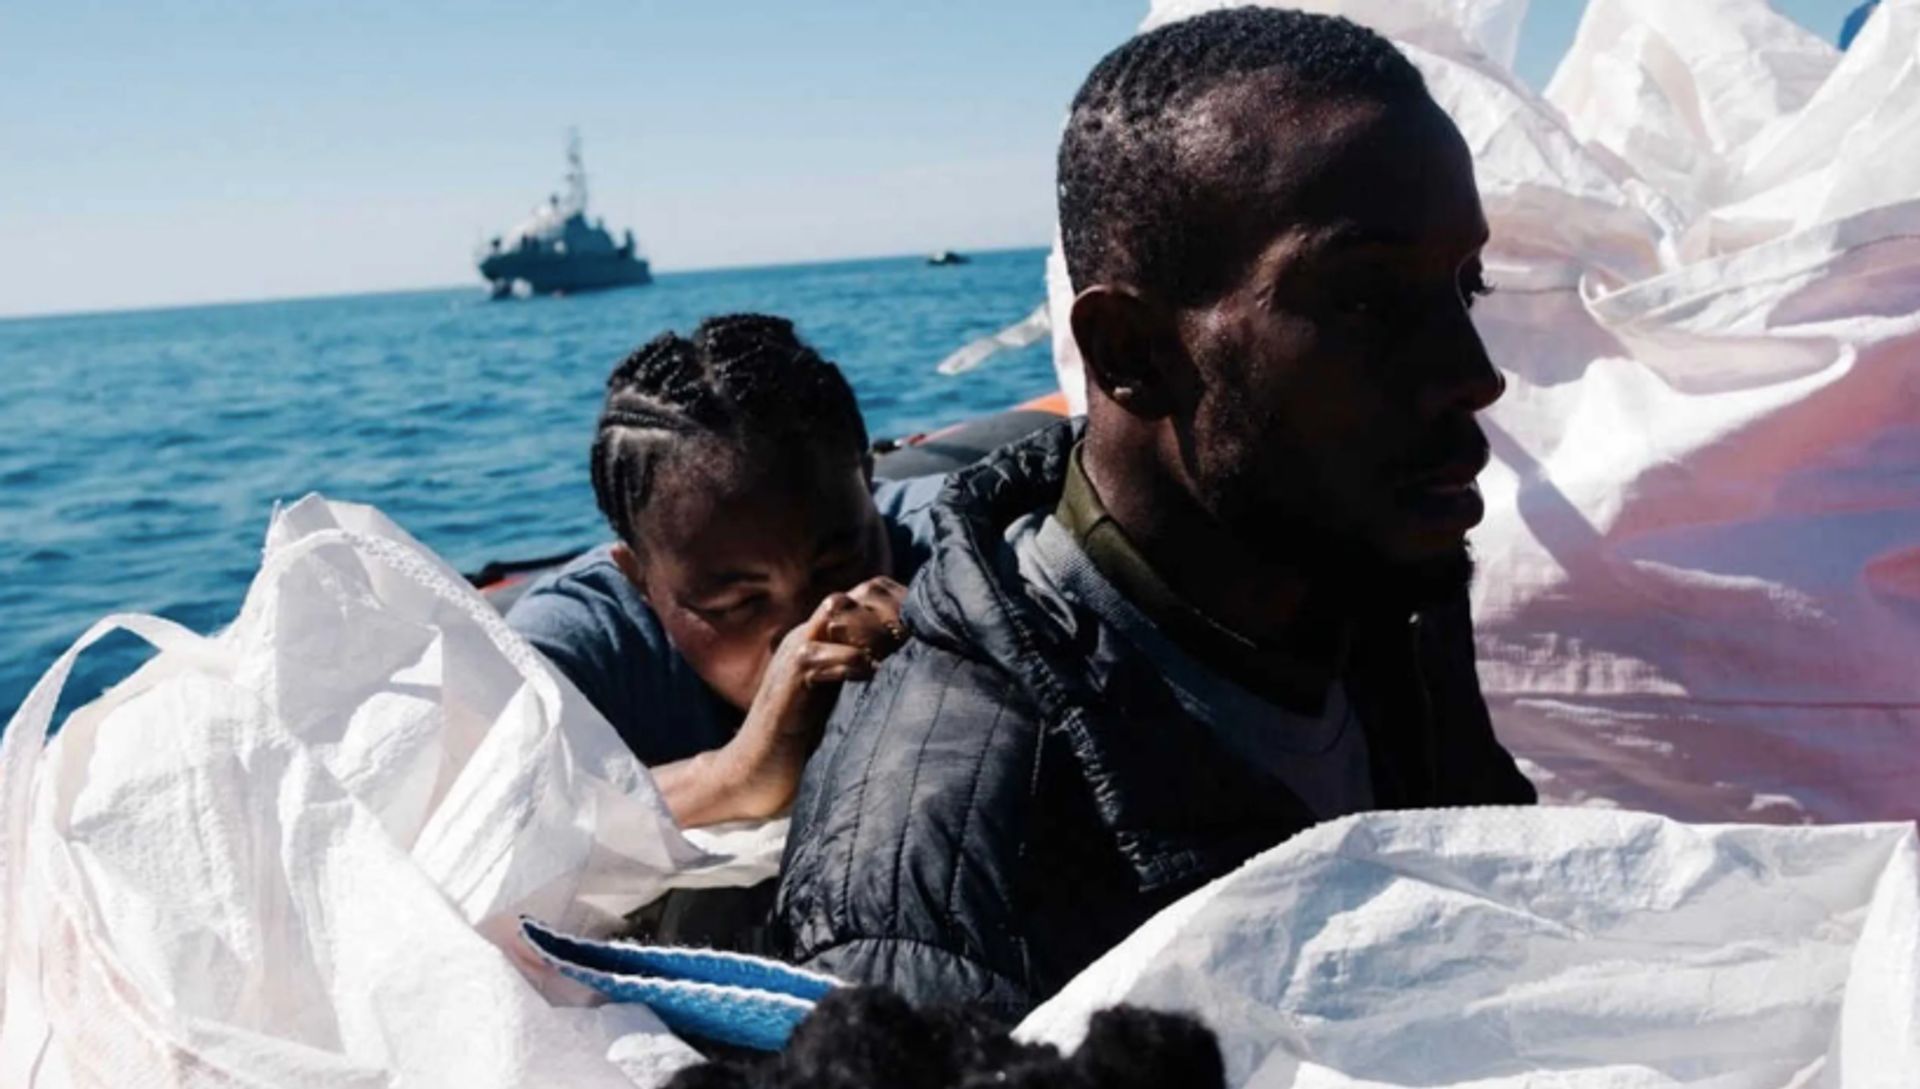 Vluchtelingenvrijwilliger Rob maakte een intense reddingsactie op zee mee